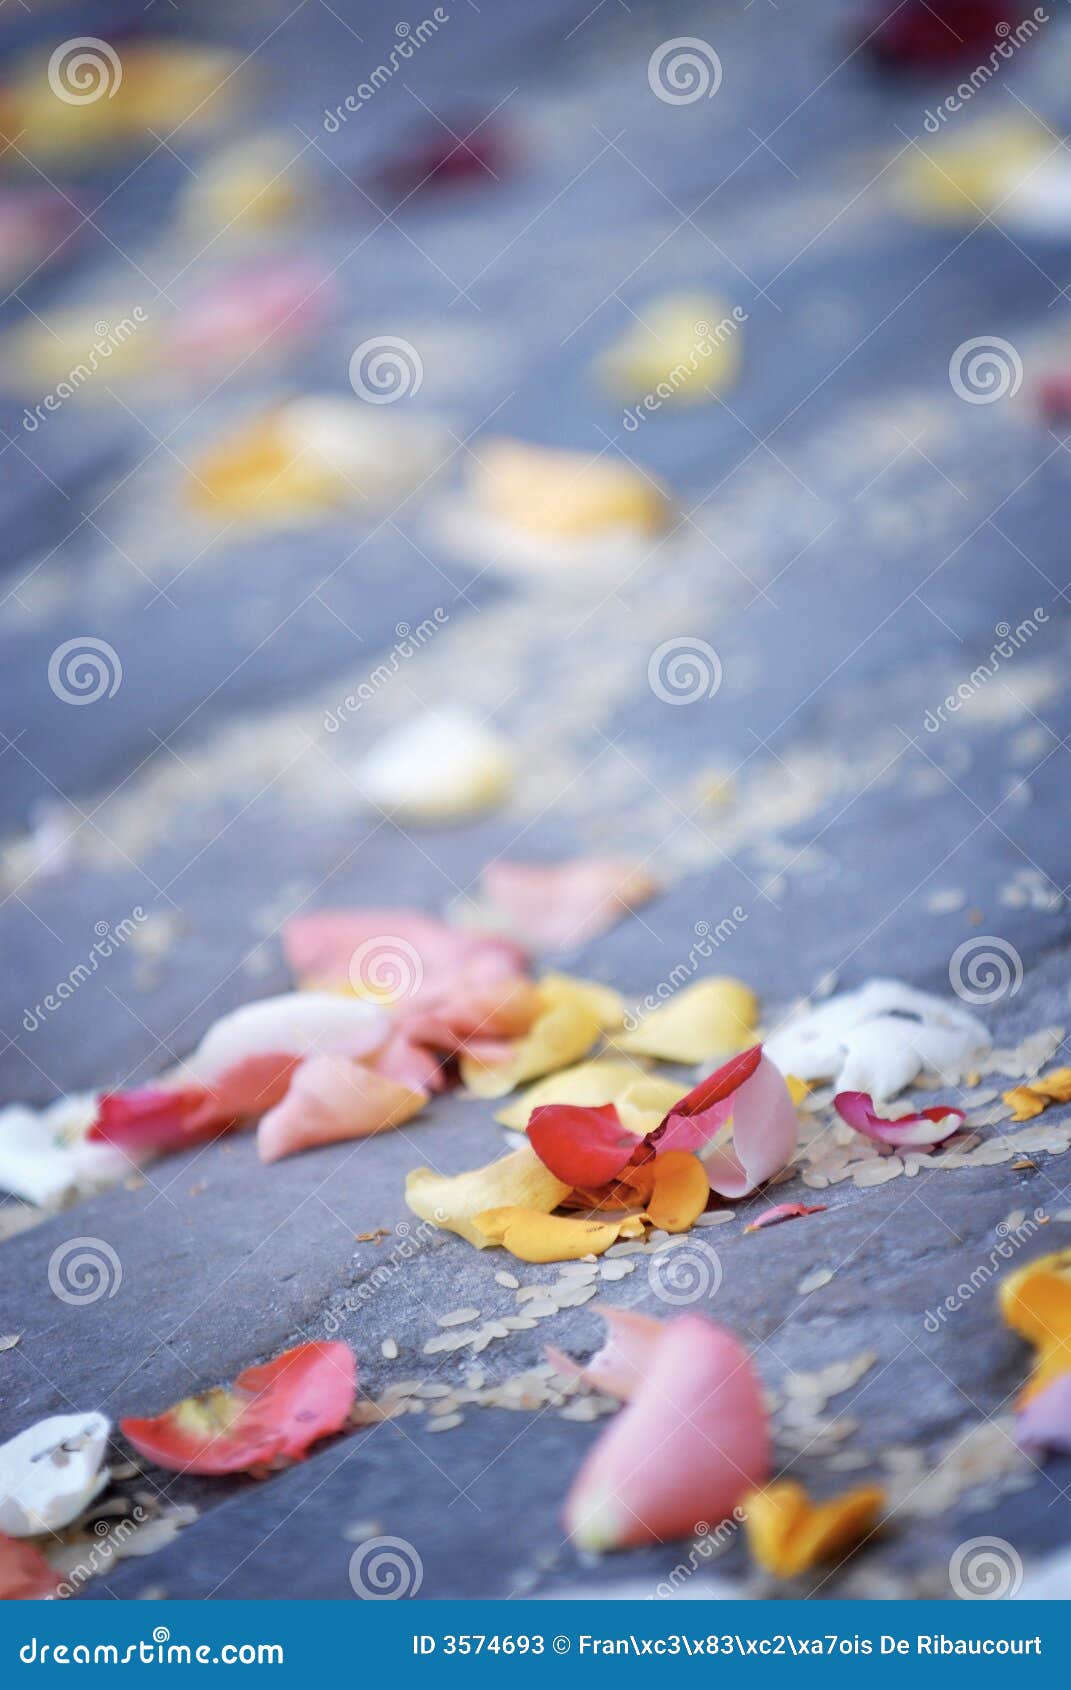 scattered rose petals